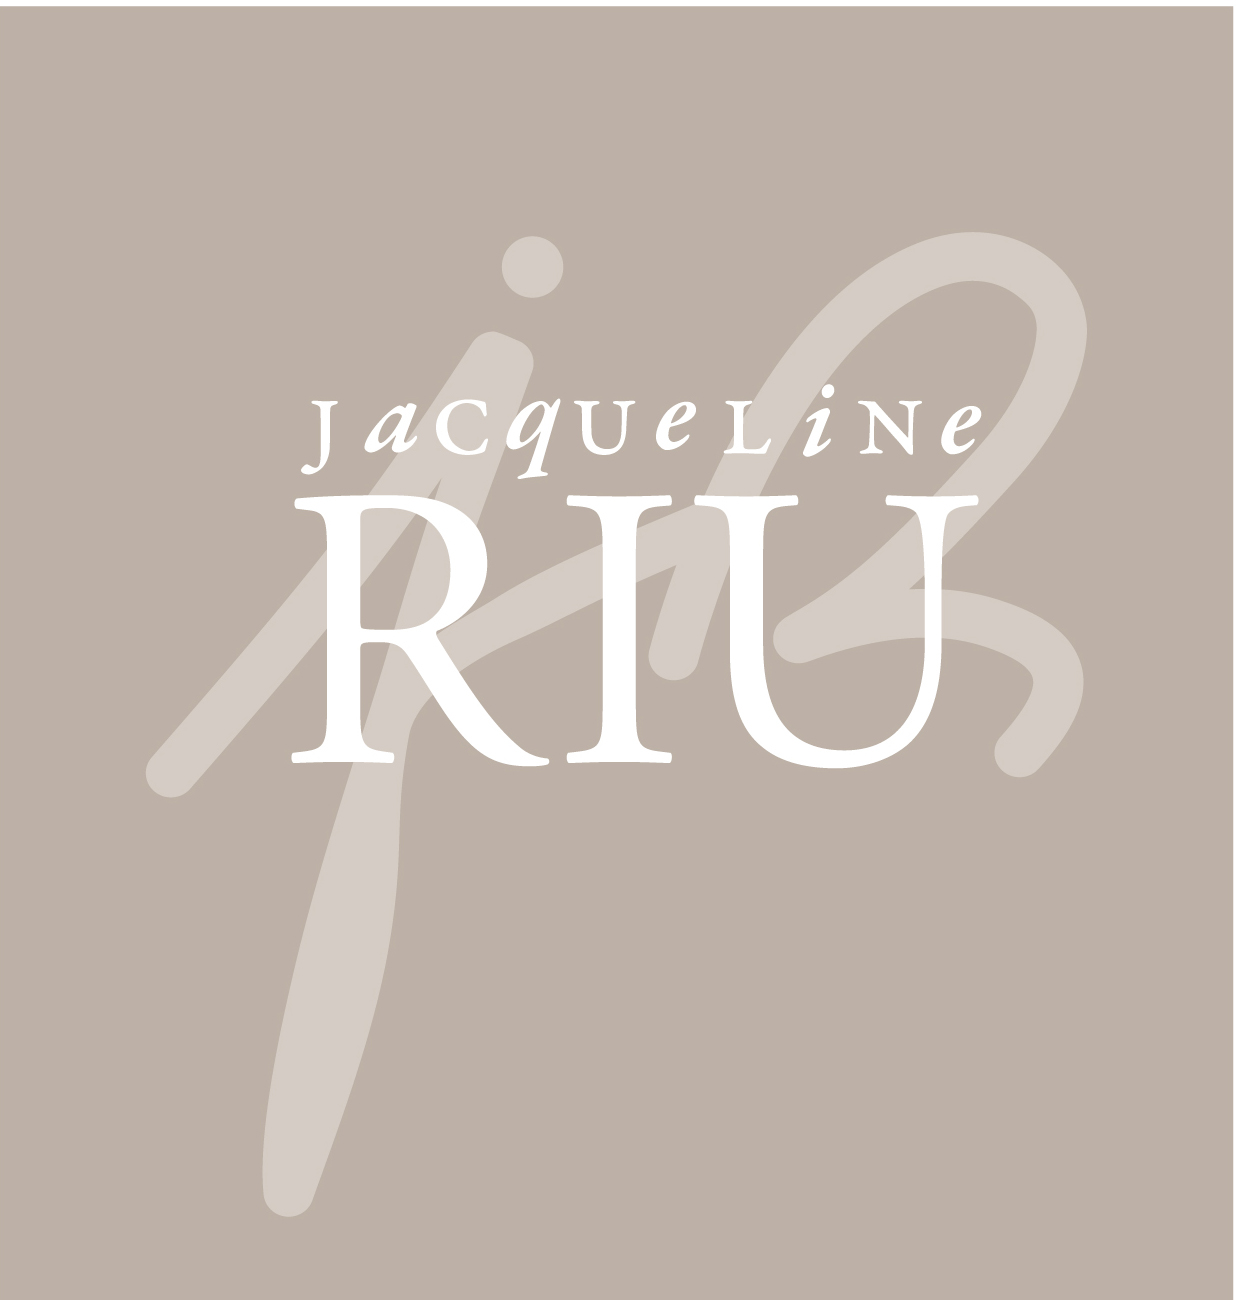 www.toutesvosmarques.com : RIU AUBLET ET COMPAGNIE propose la marque JACQUELINE RIU